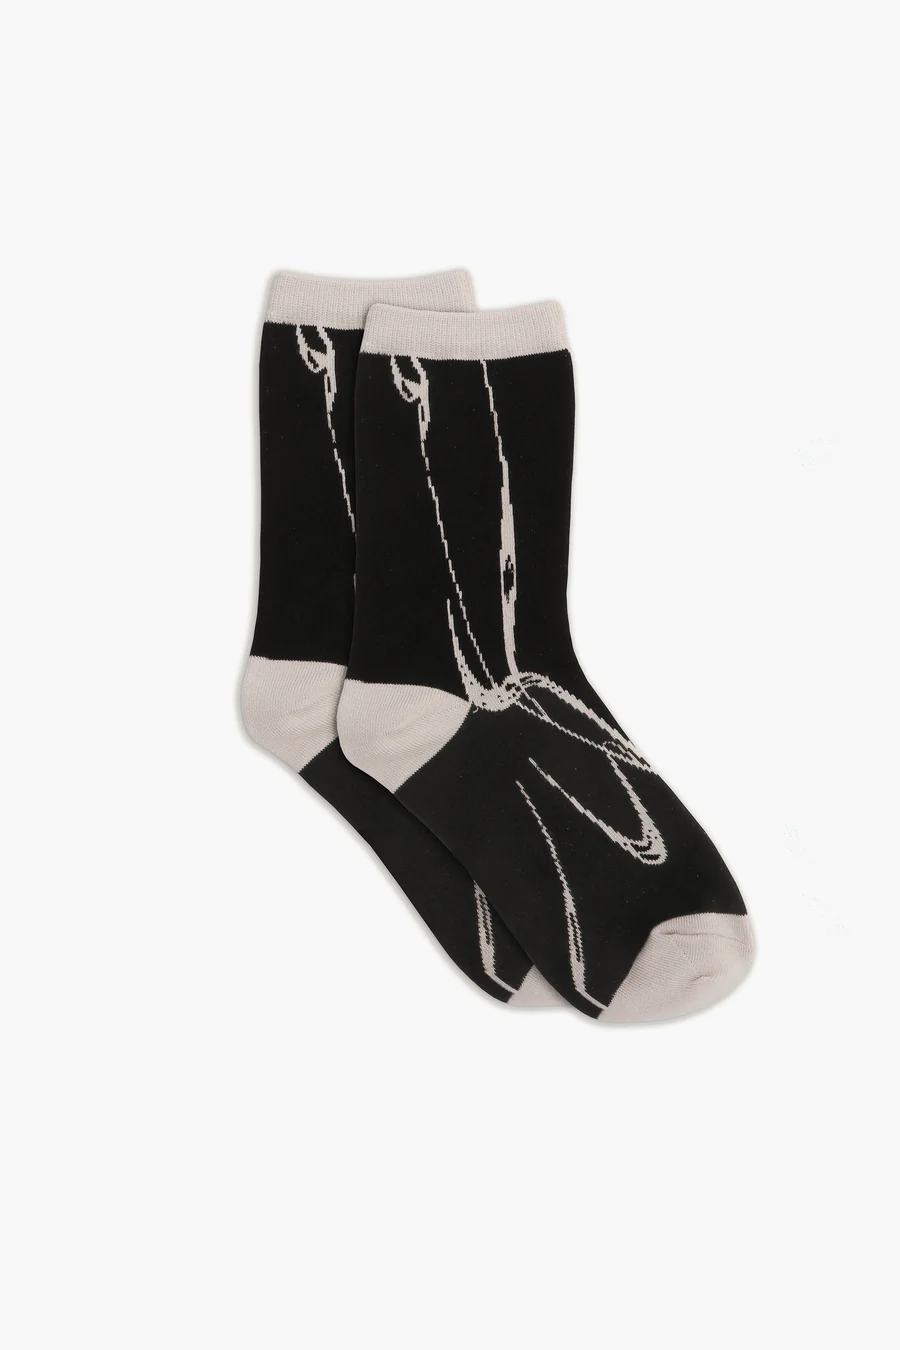 Tutti & Co Mist Socks